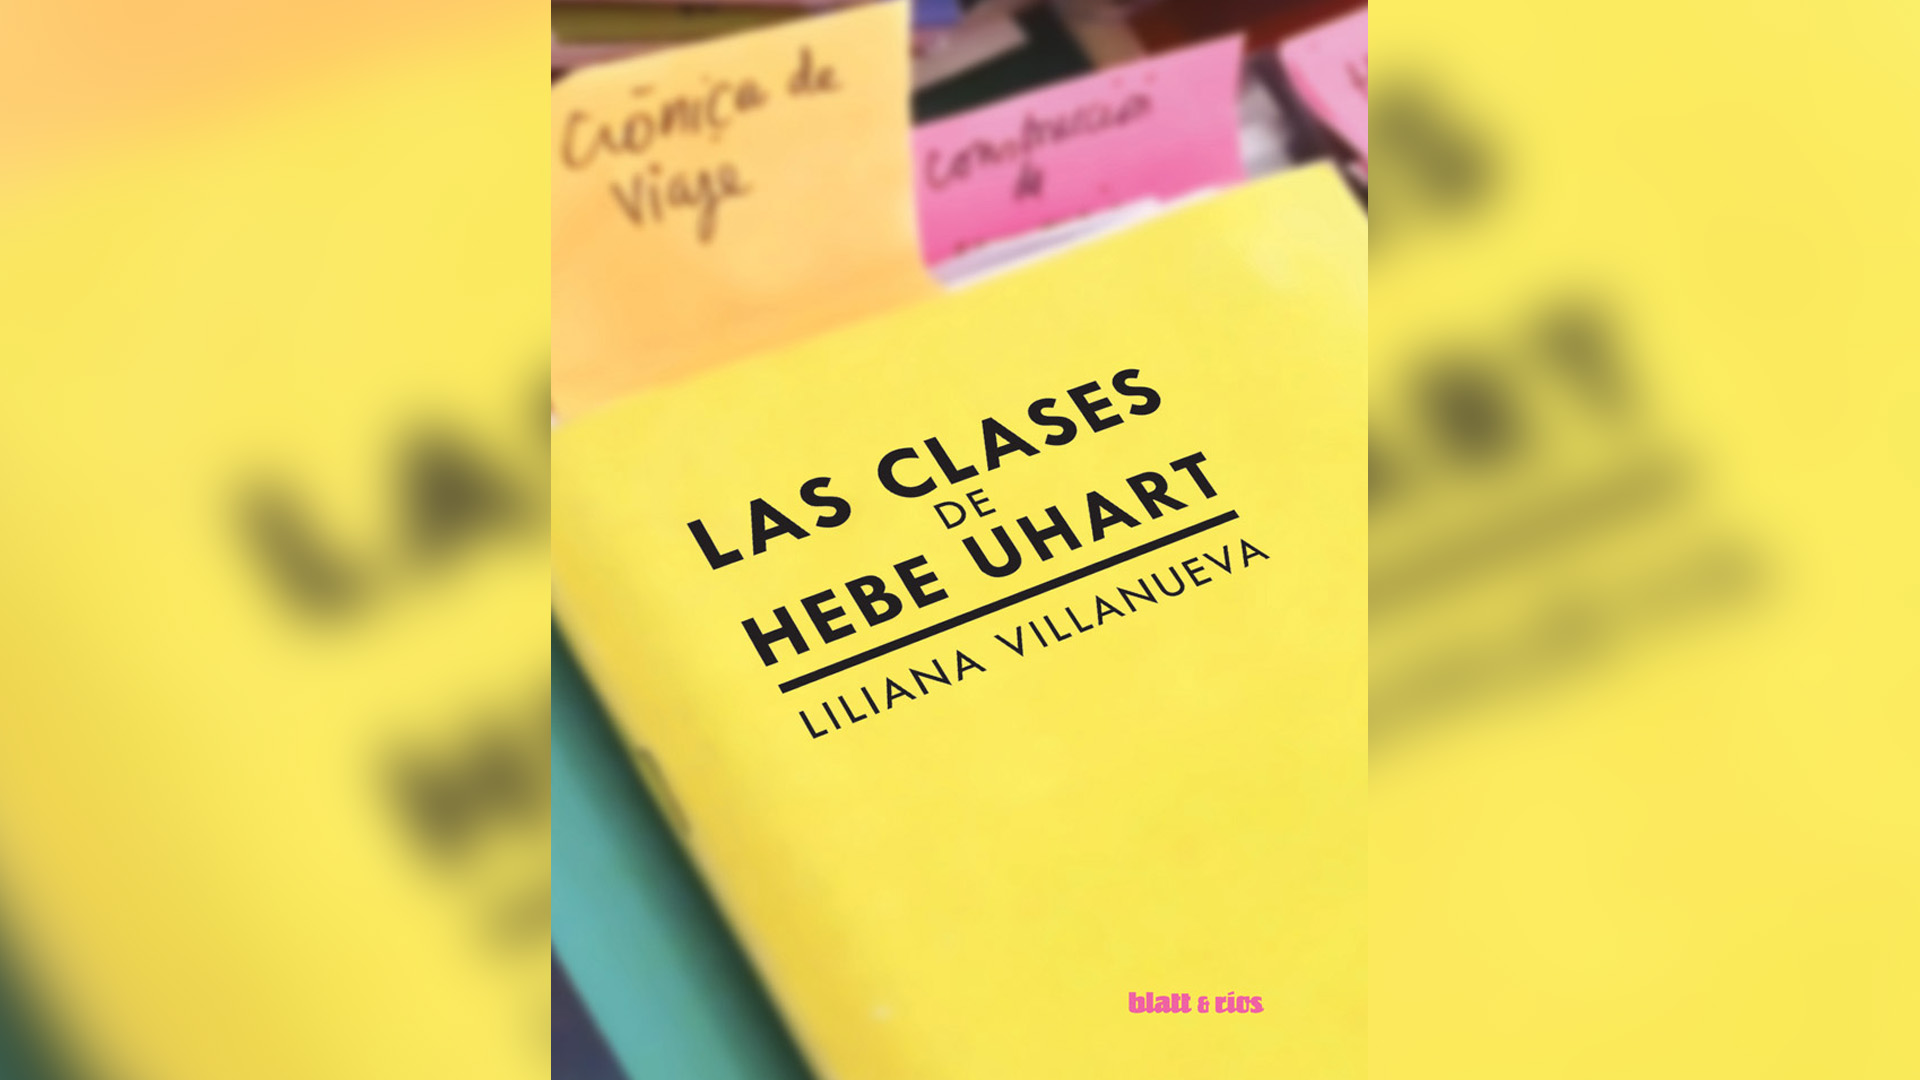 Liliana Villanueva compiló sus apuntes en el taller de Hebe Uhart y los volvió libro.